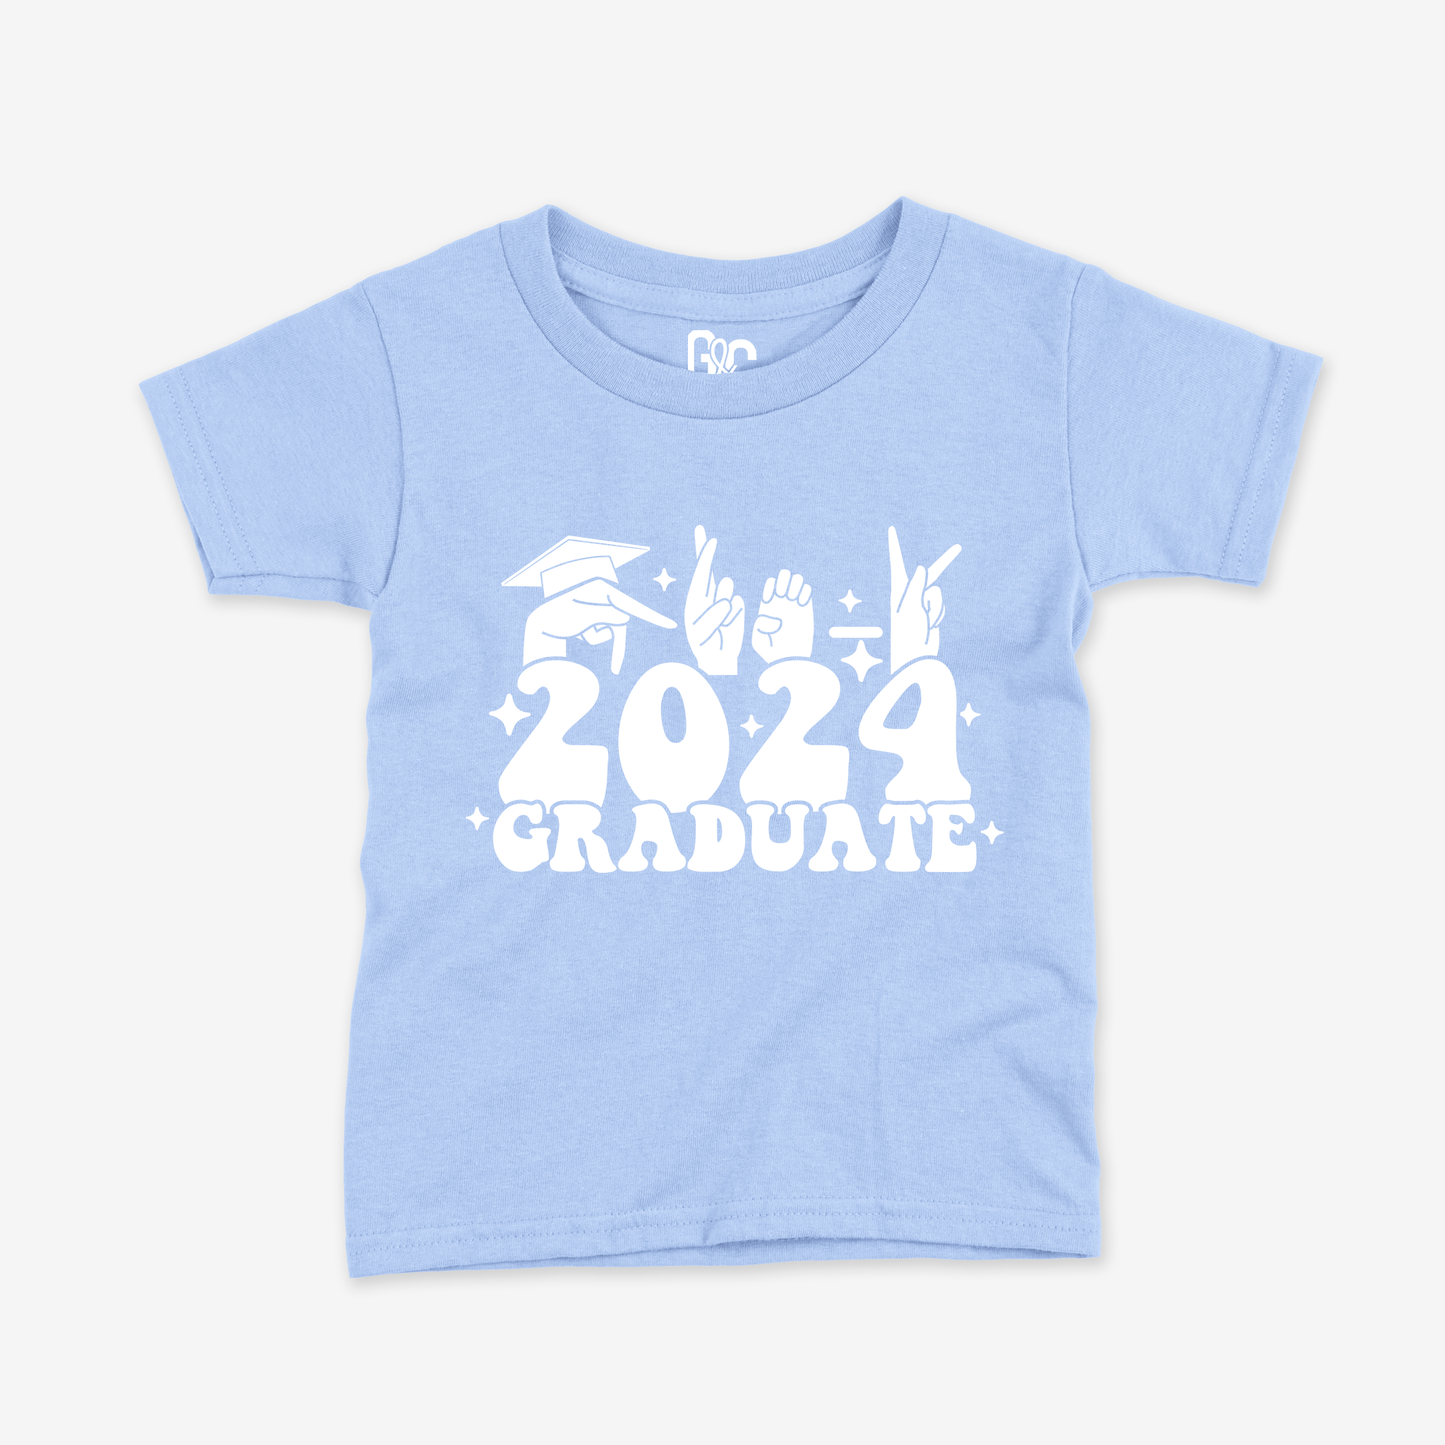 Pre-K 2024 Graduate Toddler Tee